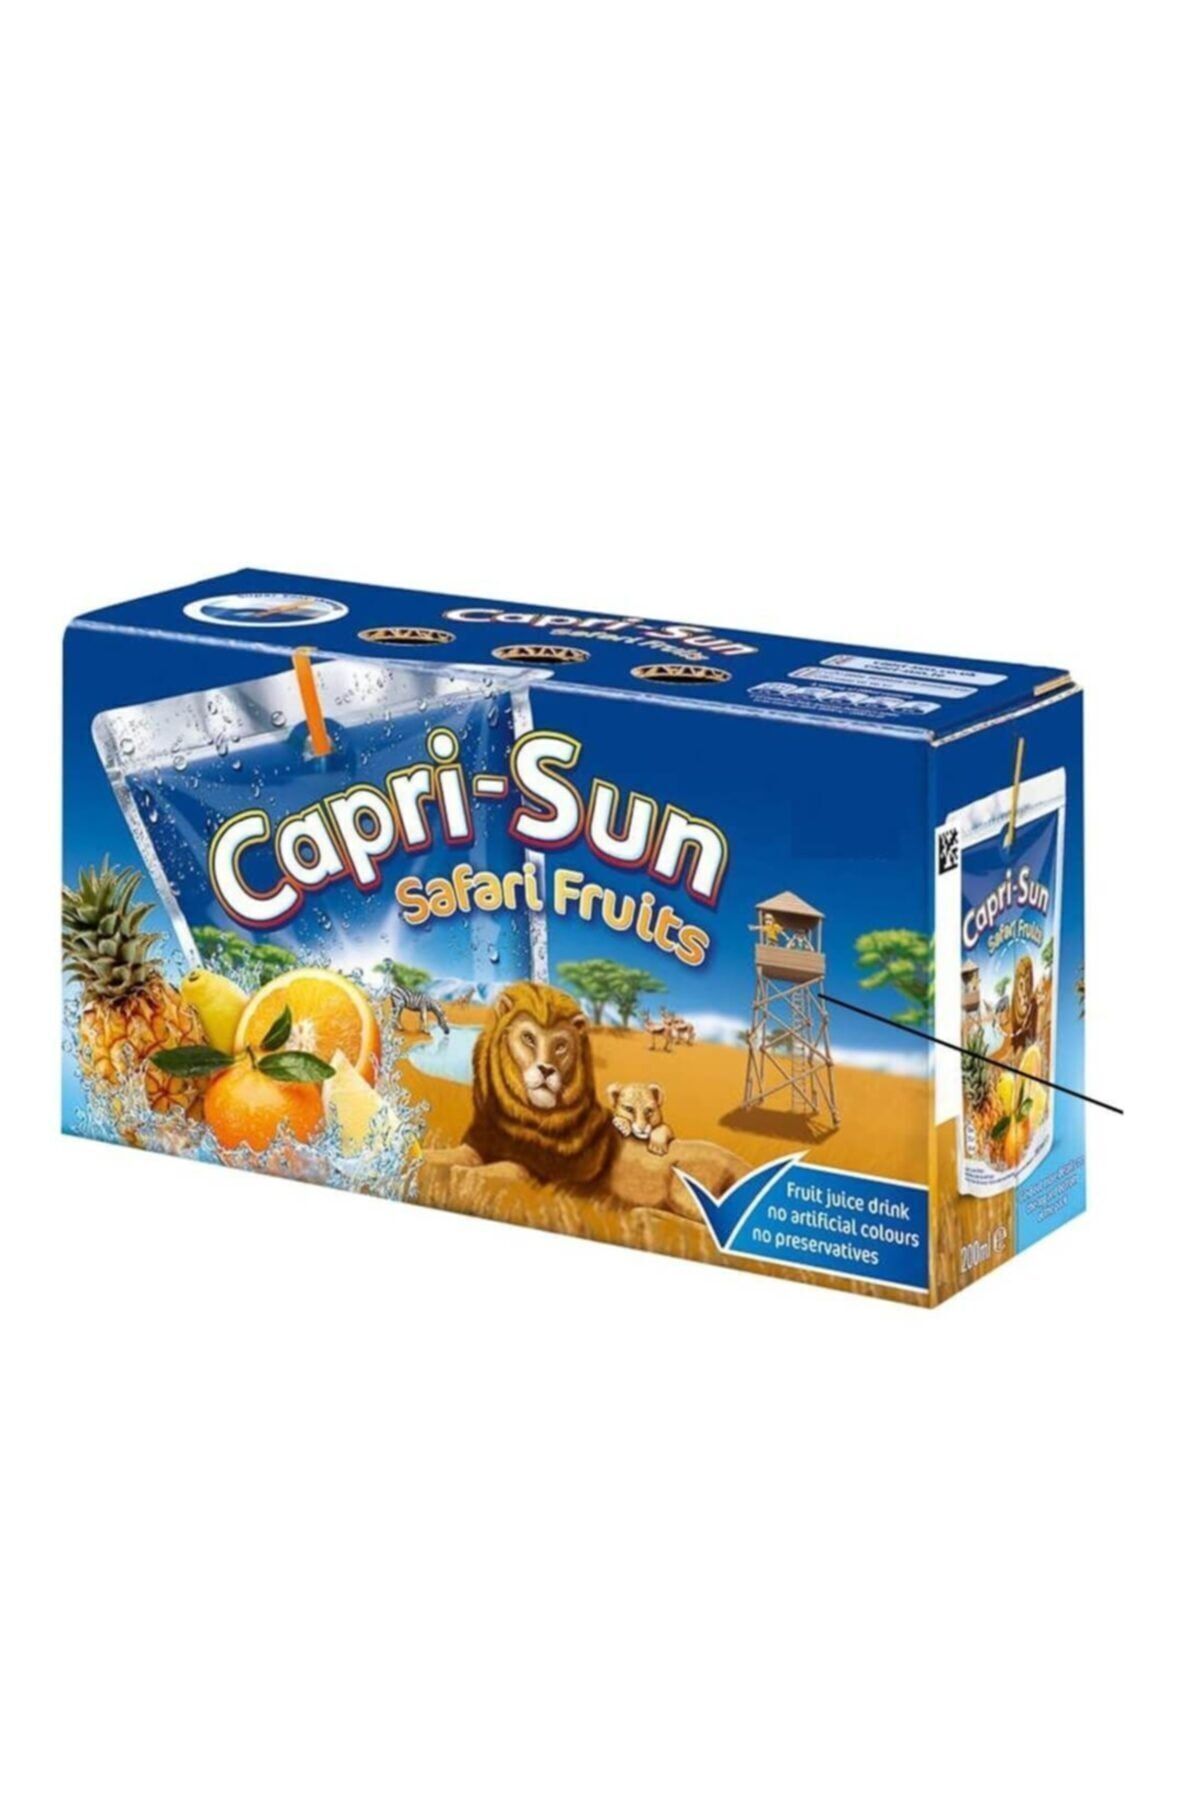 Capri - Sun Caprı-sun Safari 20 Adet